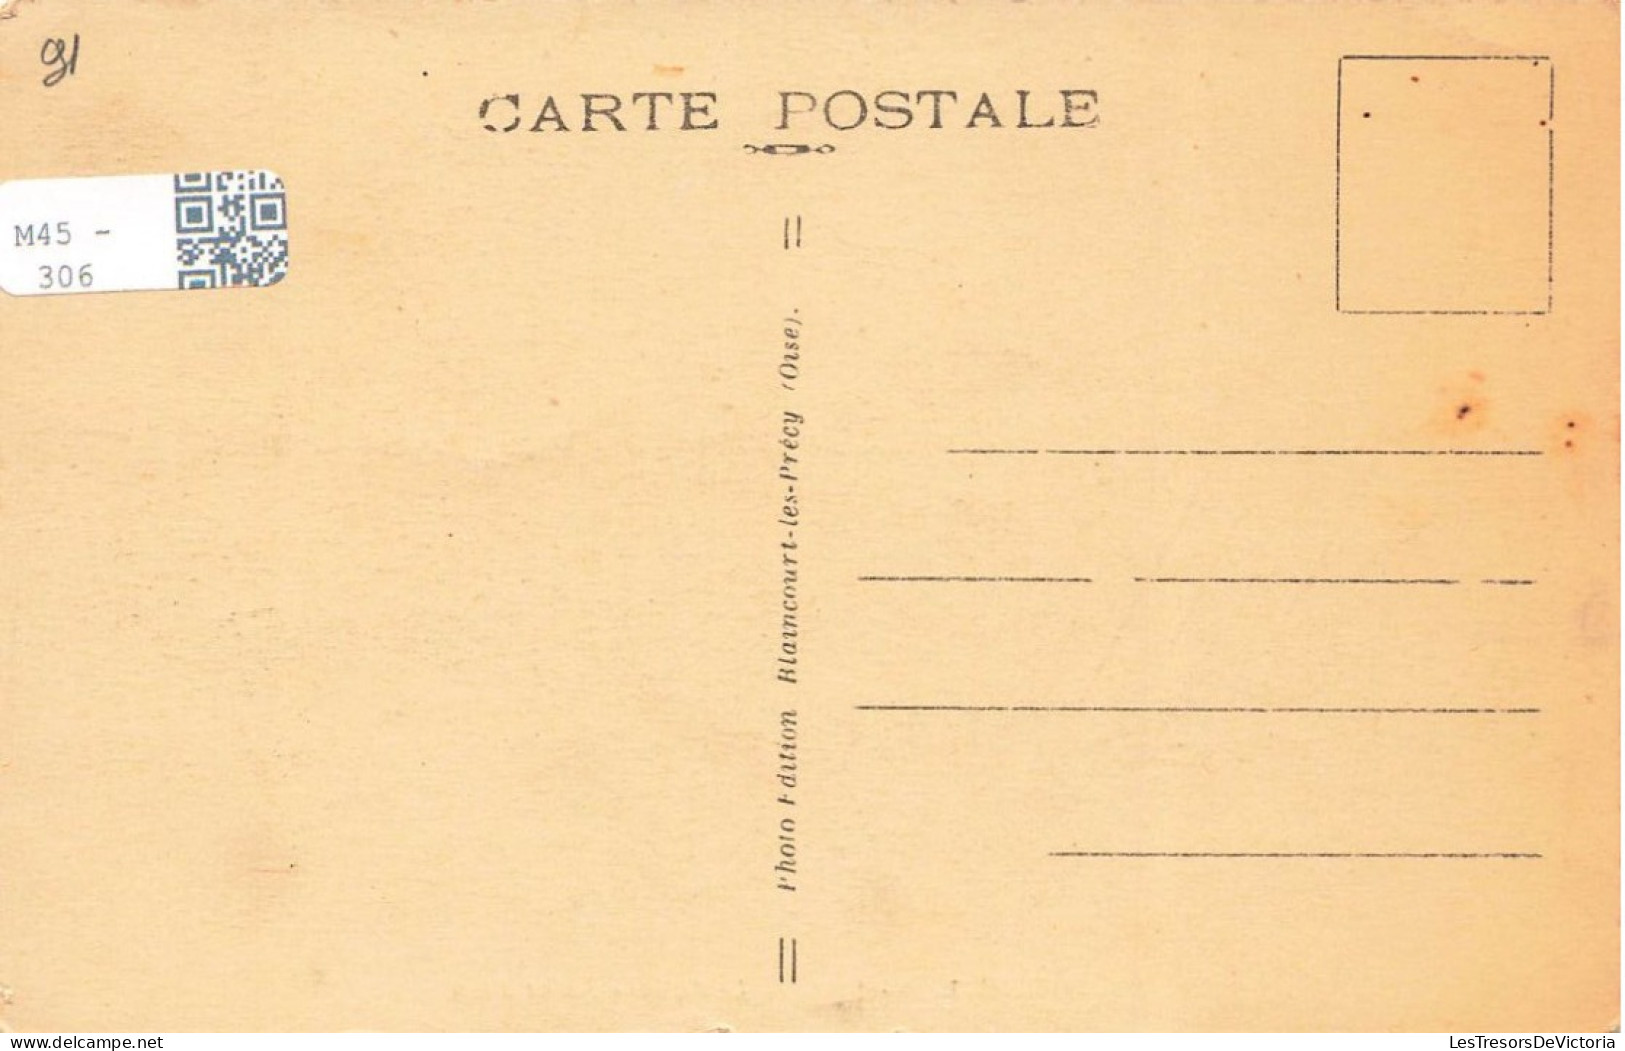 FRANCE - Corbeil - Vue Sur Le Square Saint Jean - Carte Postale Ancienne - Corbeil Essonnes